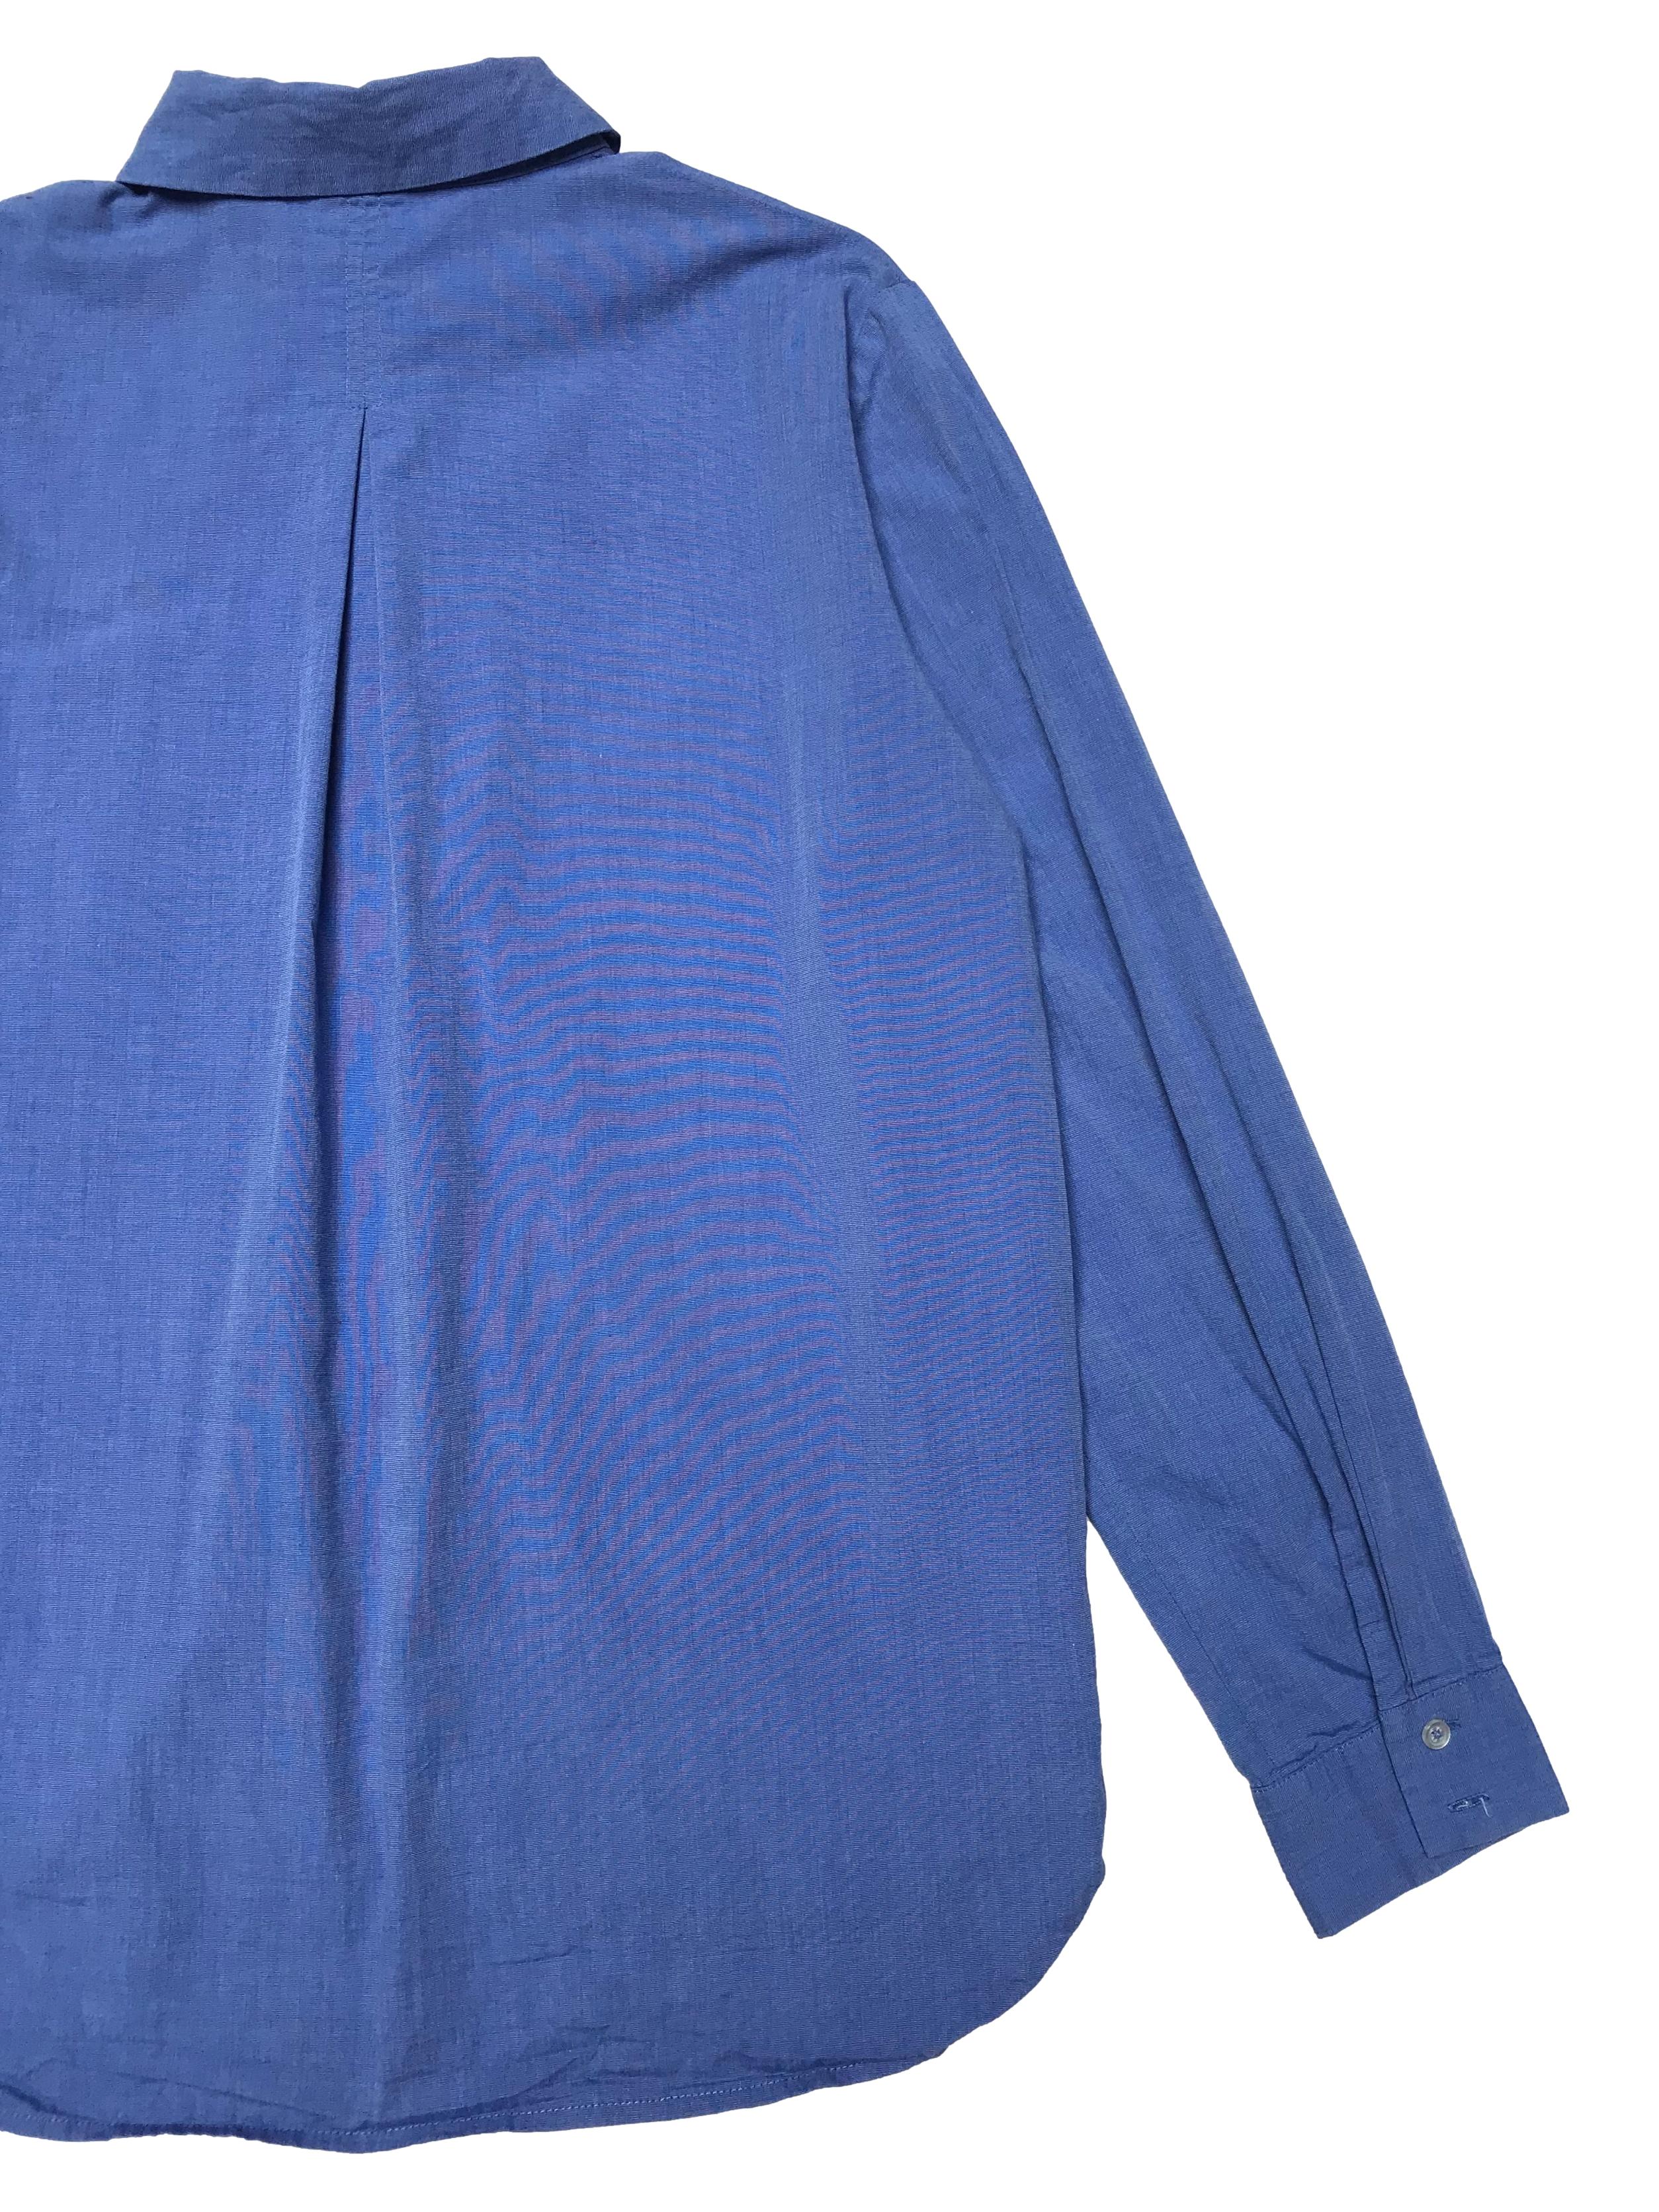 Camisa Mango 100% algodón azul, tiene bolsillo en el pecho, manga larga regulable con botón. Ancho 106cm Largo 60-65cm. Precio original S/ 149